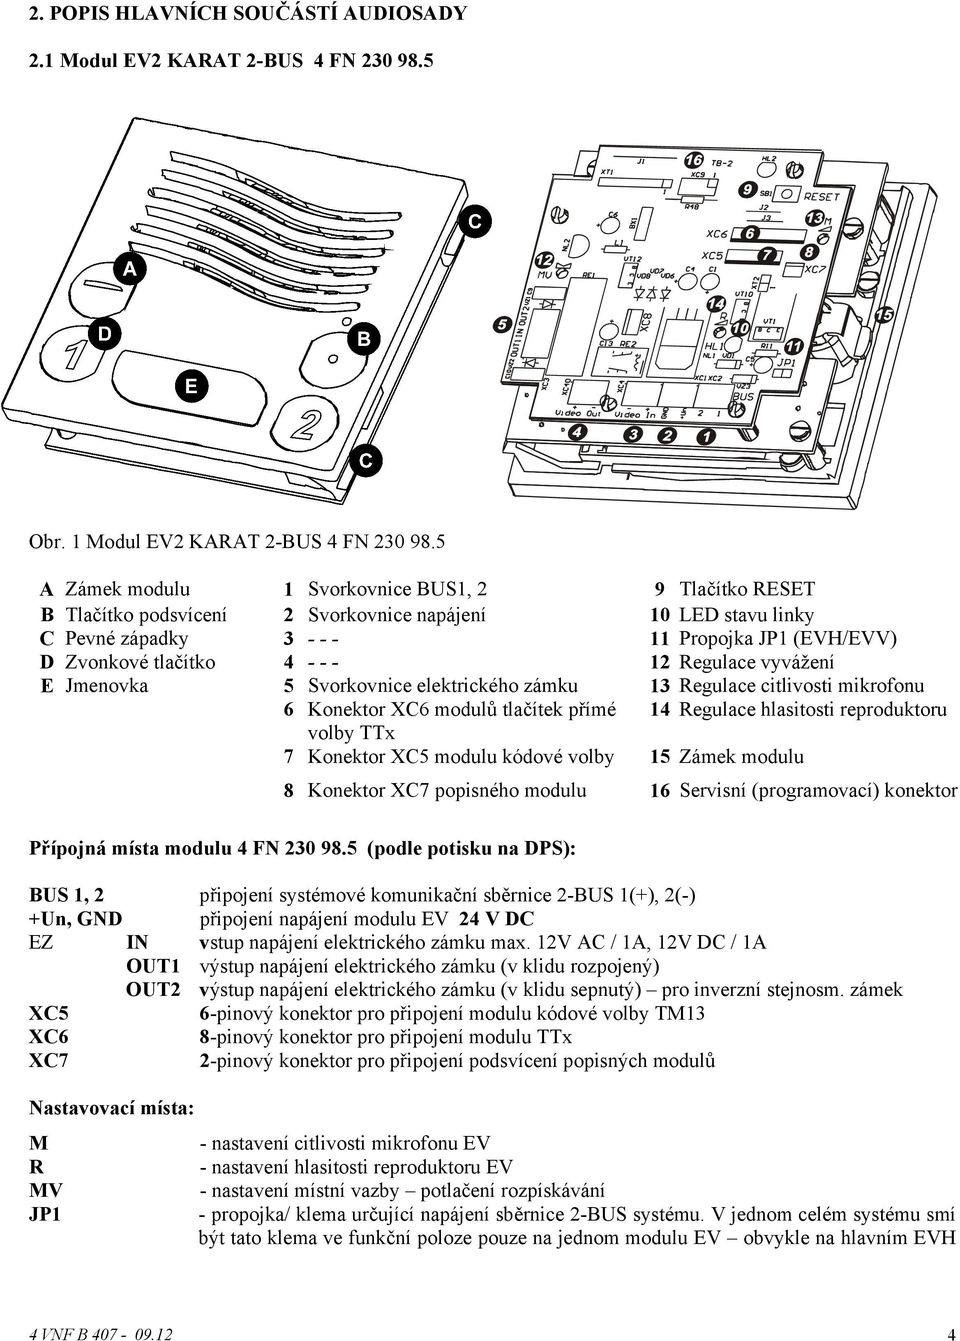 Regulace vyvážení E Jmenovka 5 Svorkovnice elektrického zámku 13 Regulace citlivosti mikrofonu 6 Konektor XC6 modulů tlačítek přímé 14 Regulace hlasitosti reproduktoru volby TTx 7 Konektor XC5 modulu